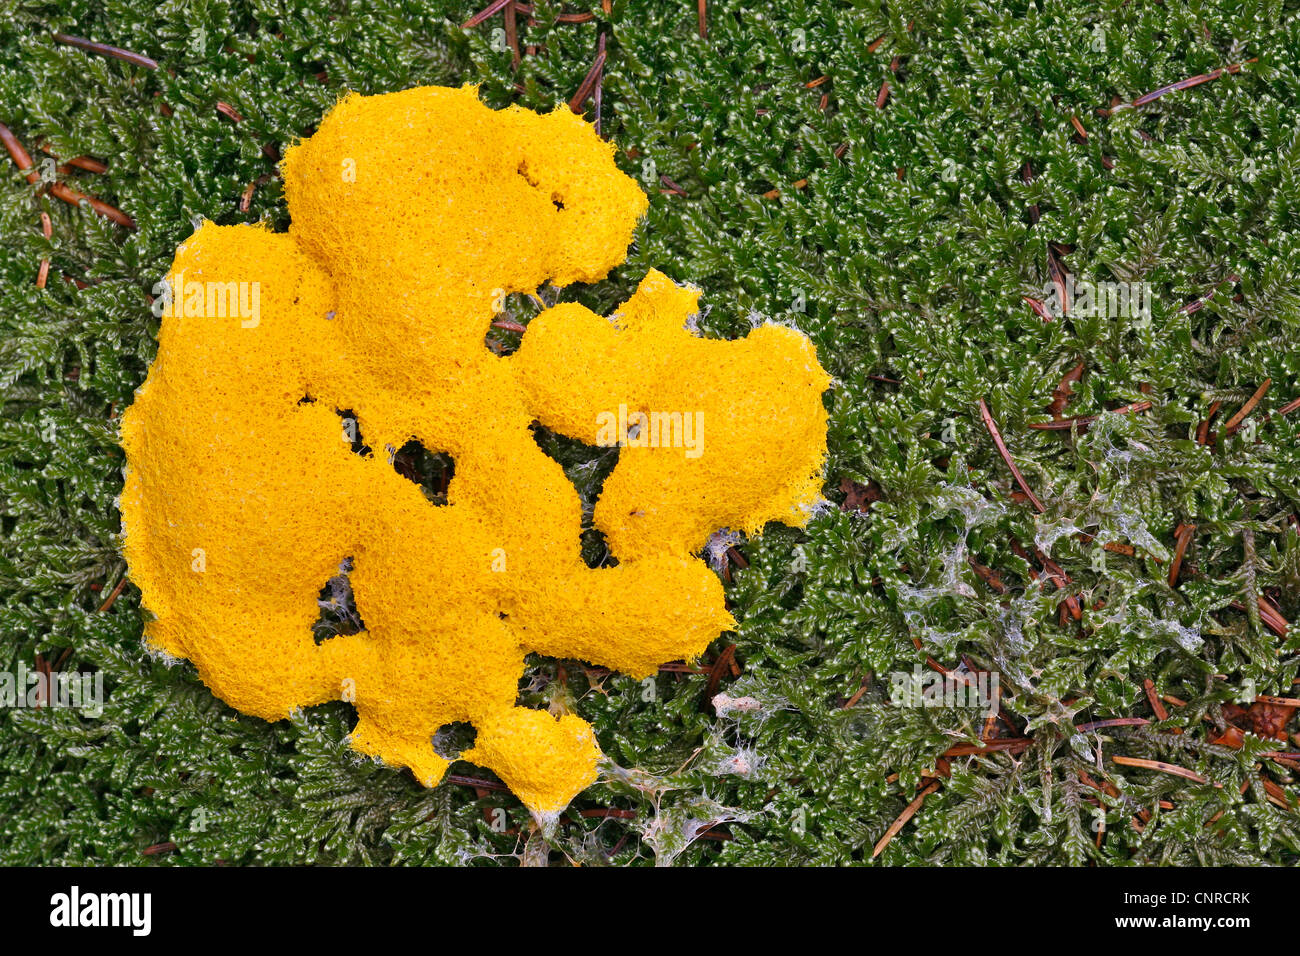 Slime mold (Myxomyceten, Eumycetozoa), Slime mold on moss, Germany, Rhineland-Palatinate Stock Photo